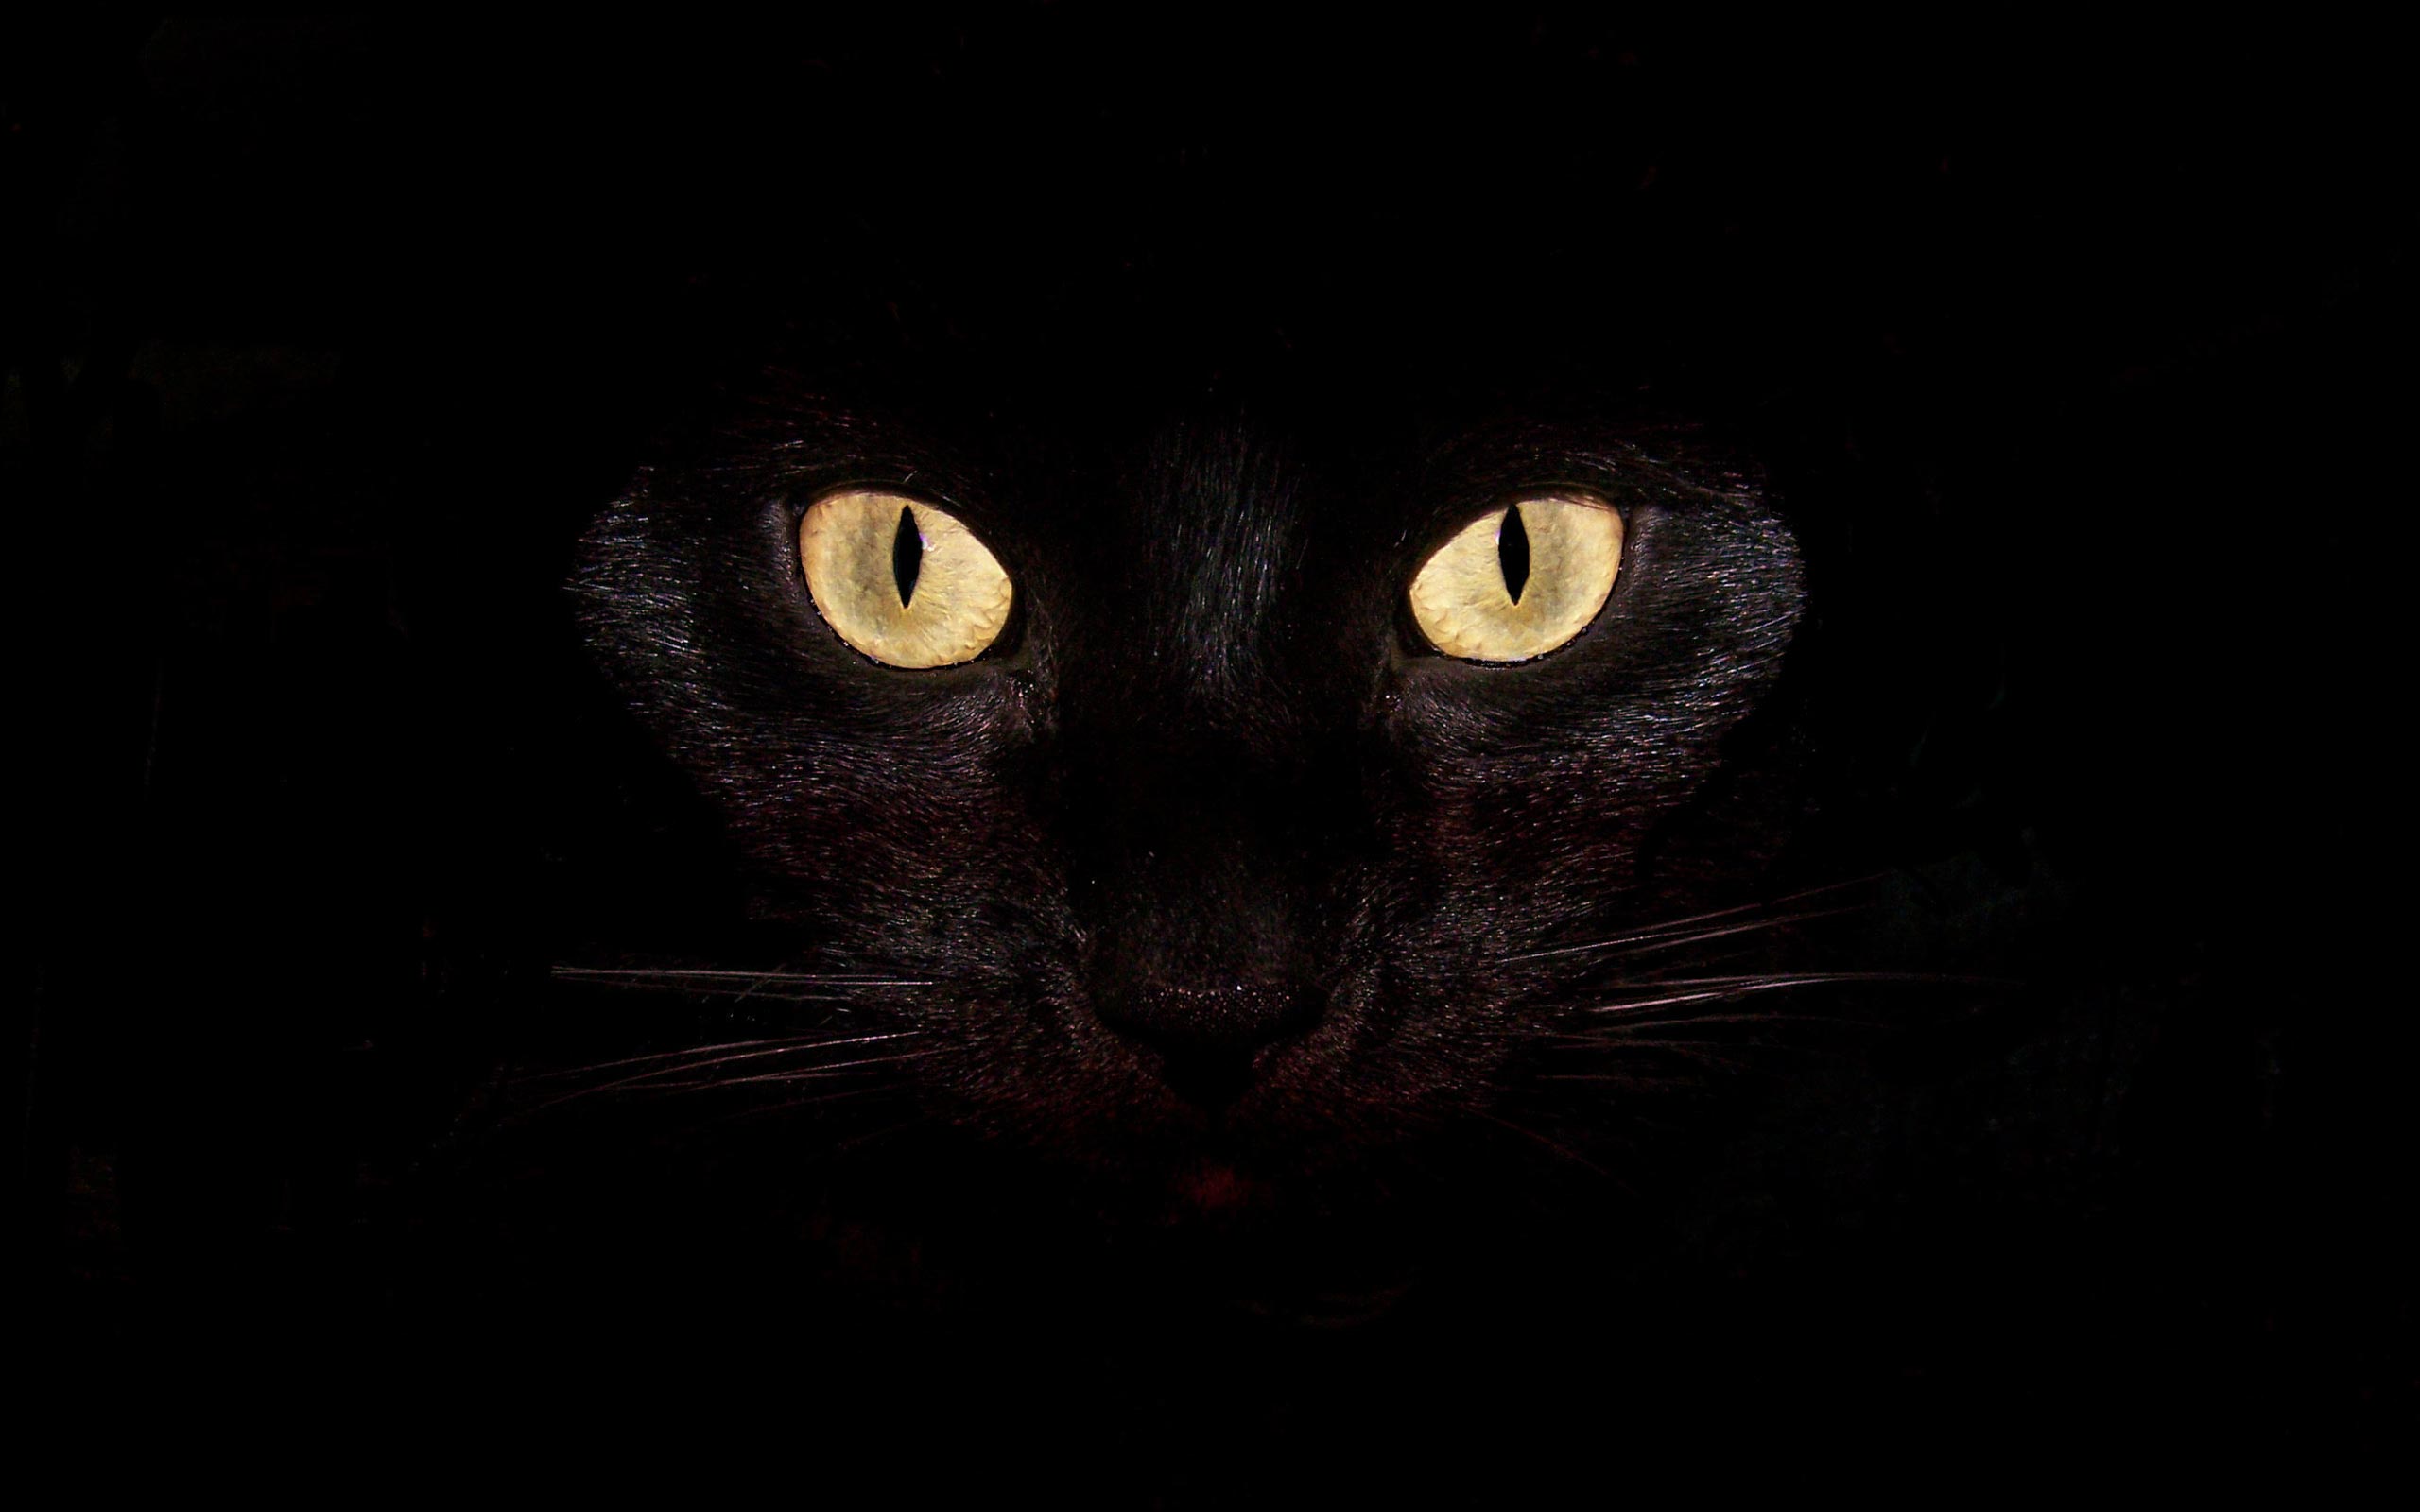 50+] Black Cat Wallpaper for Computer - WallpaperSafari